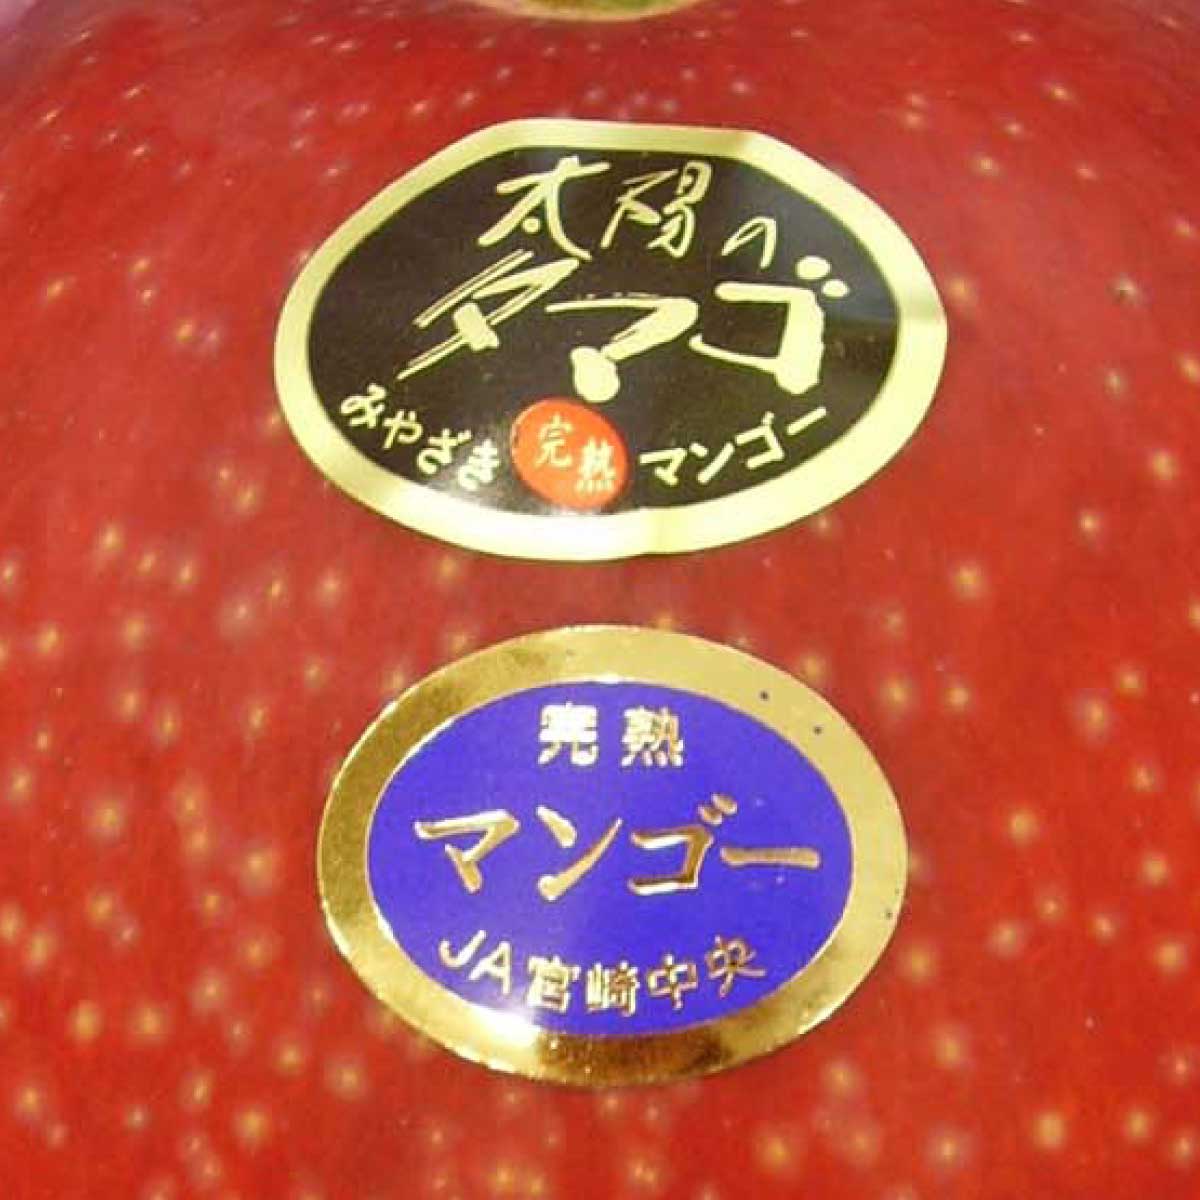 宮崎県産 最上級完熟マンゴー 太陽のタマゴ 等級シール青秀品